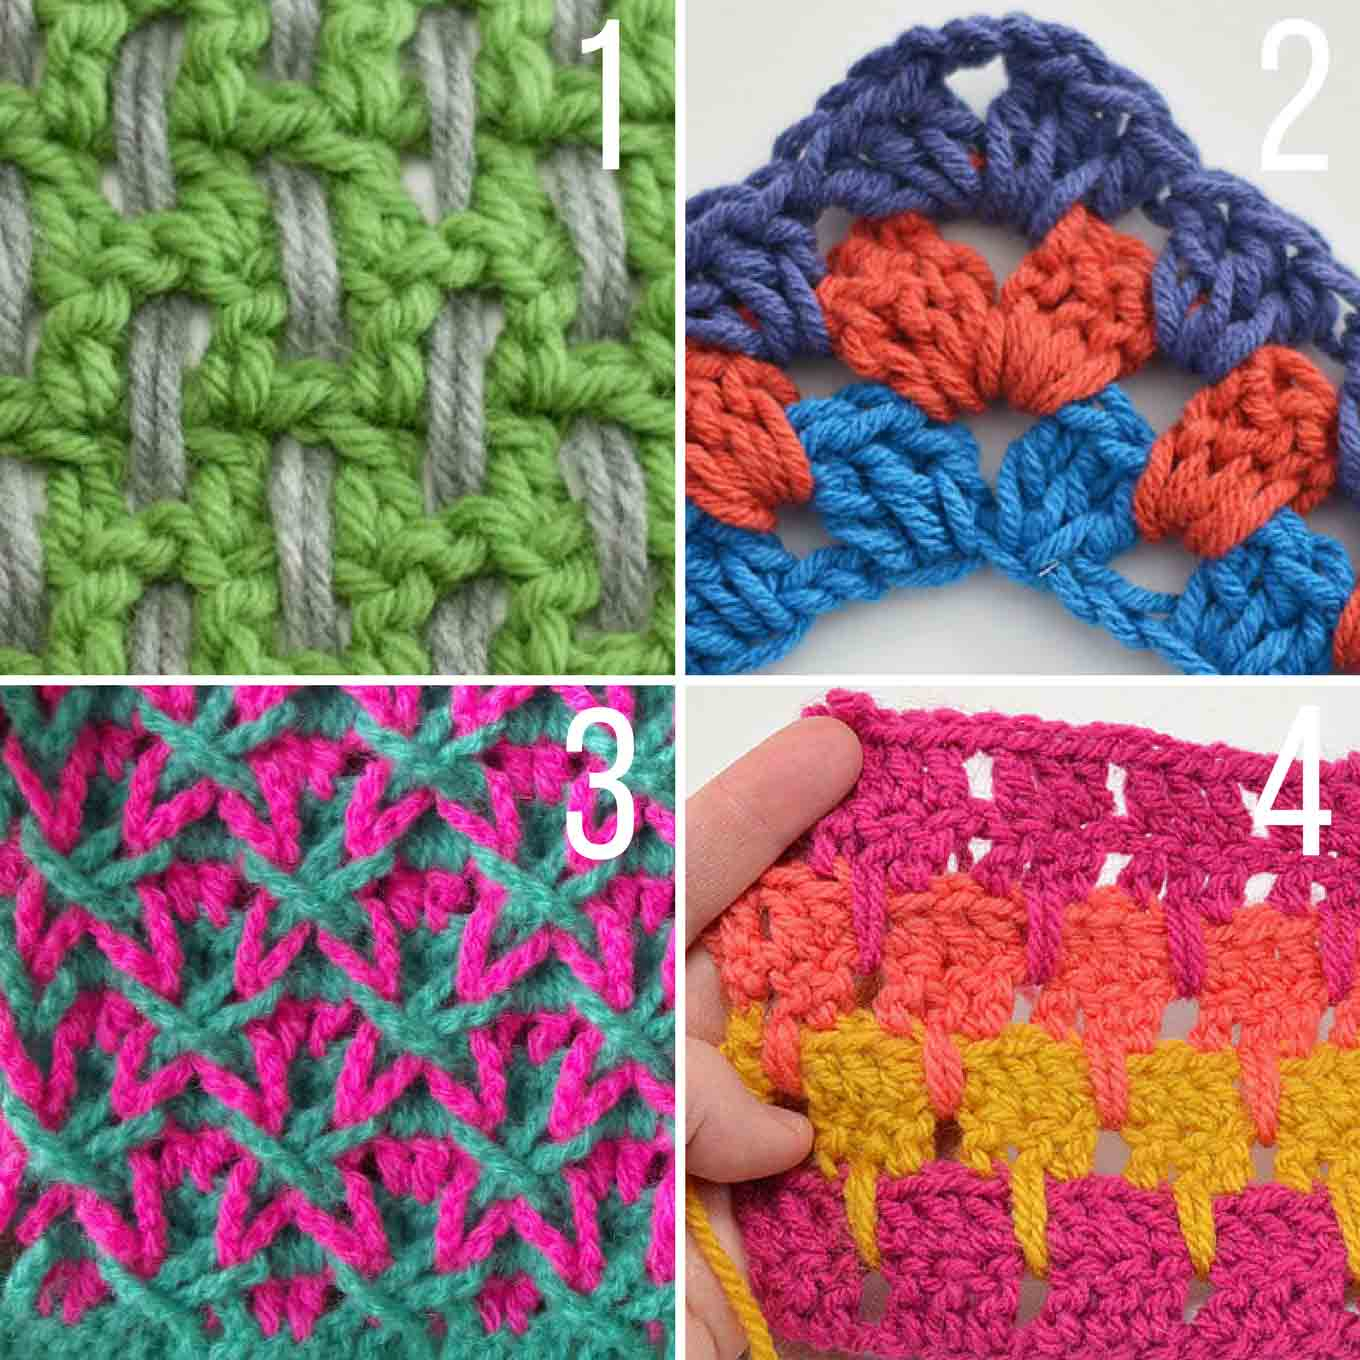 Unusual Crochet Patterns 20 Multi Color Crochet Stitch Tutorials Make Do Crew